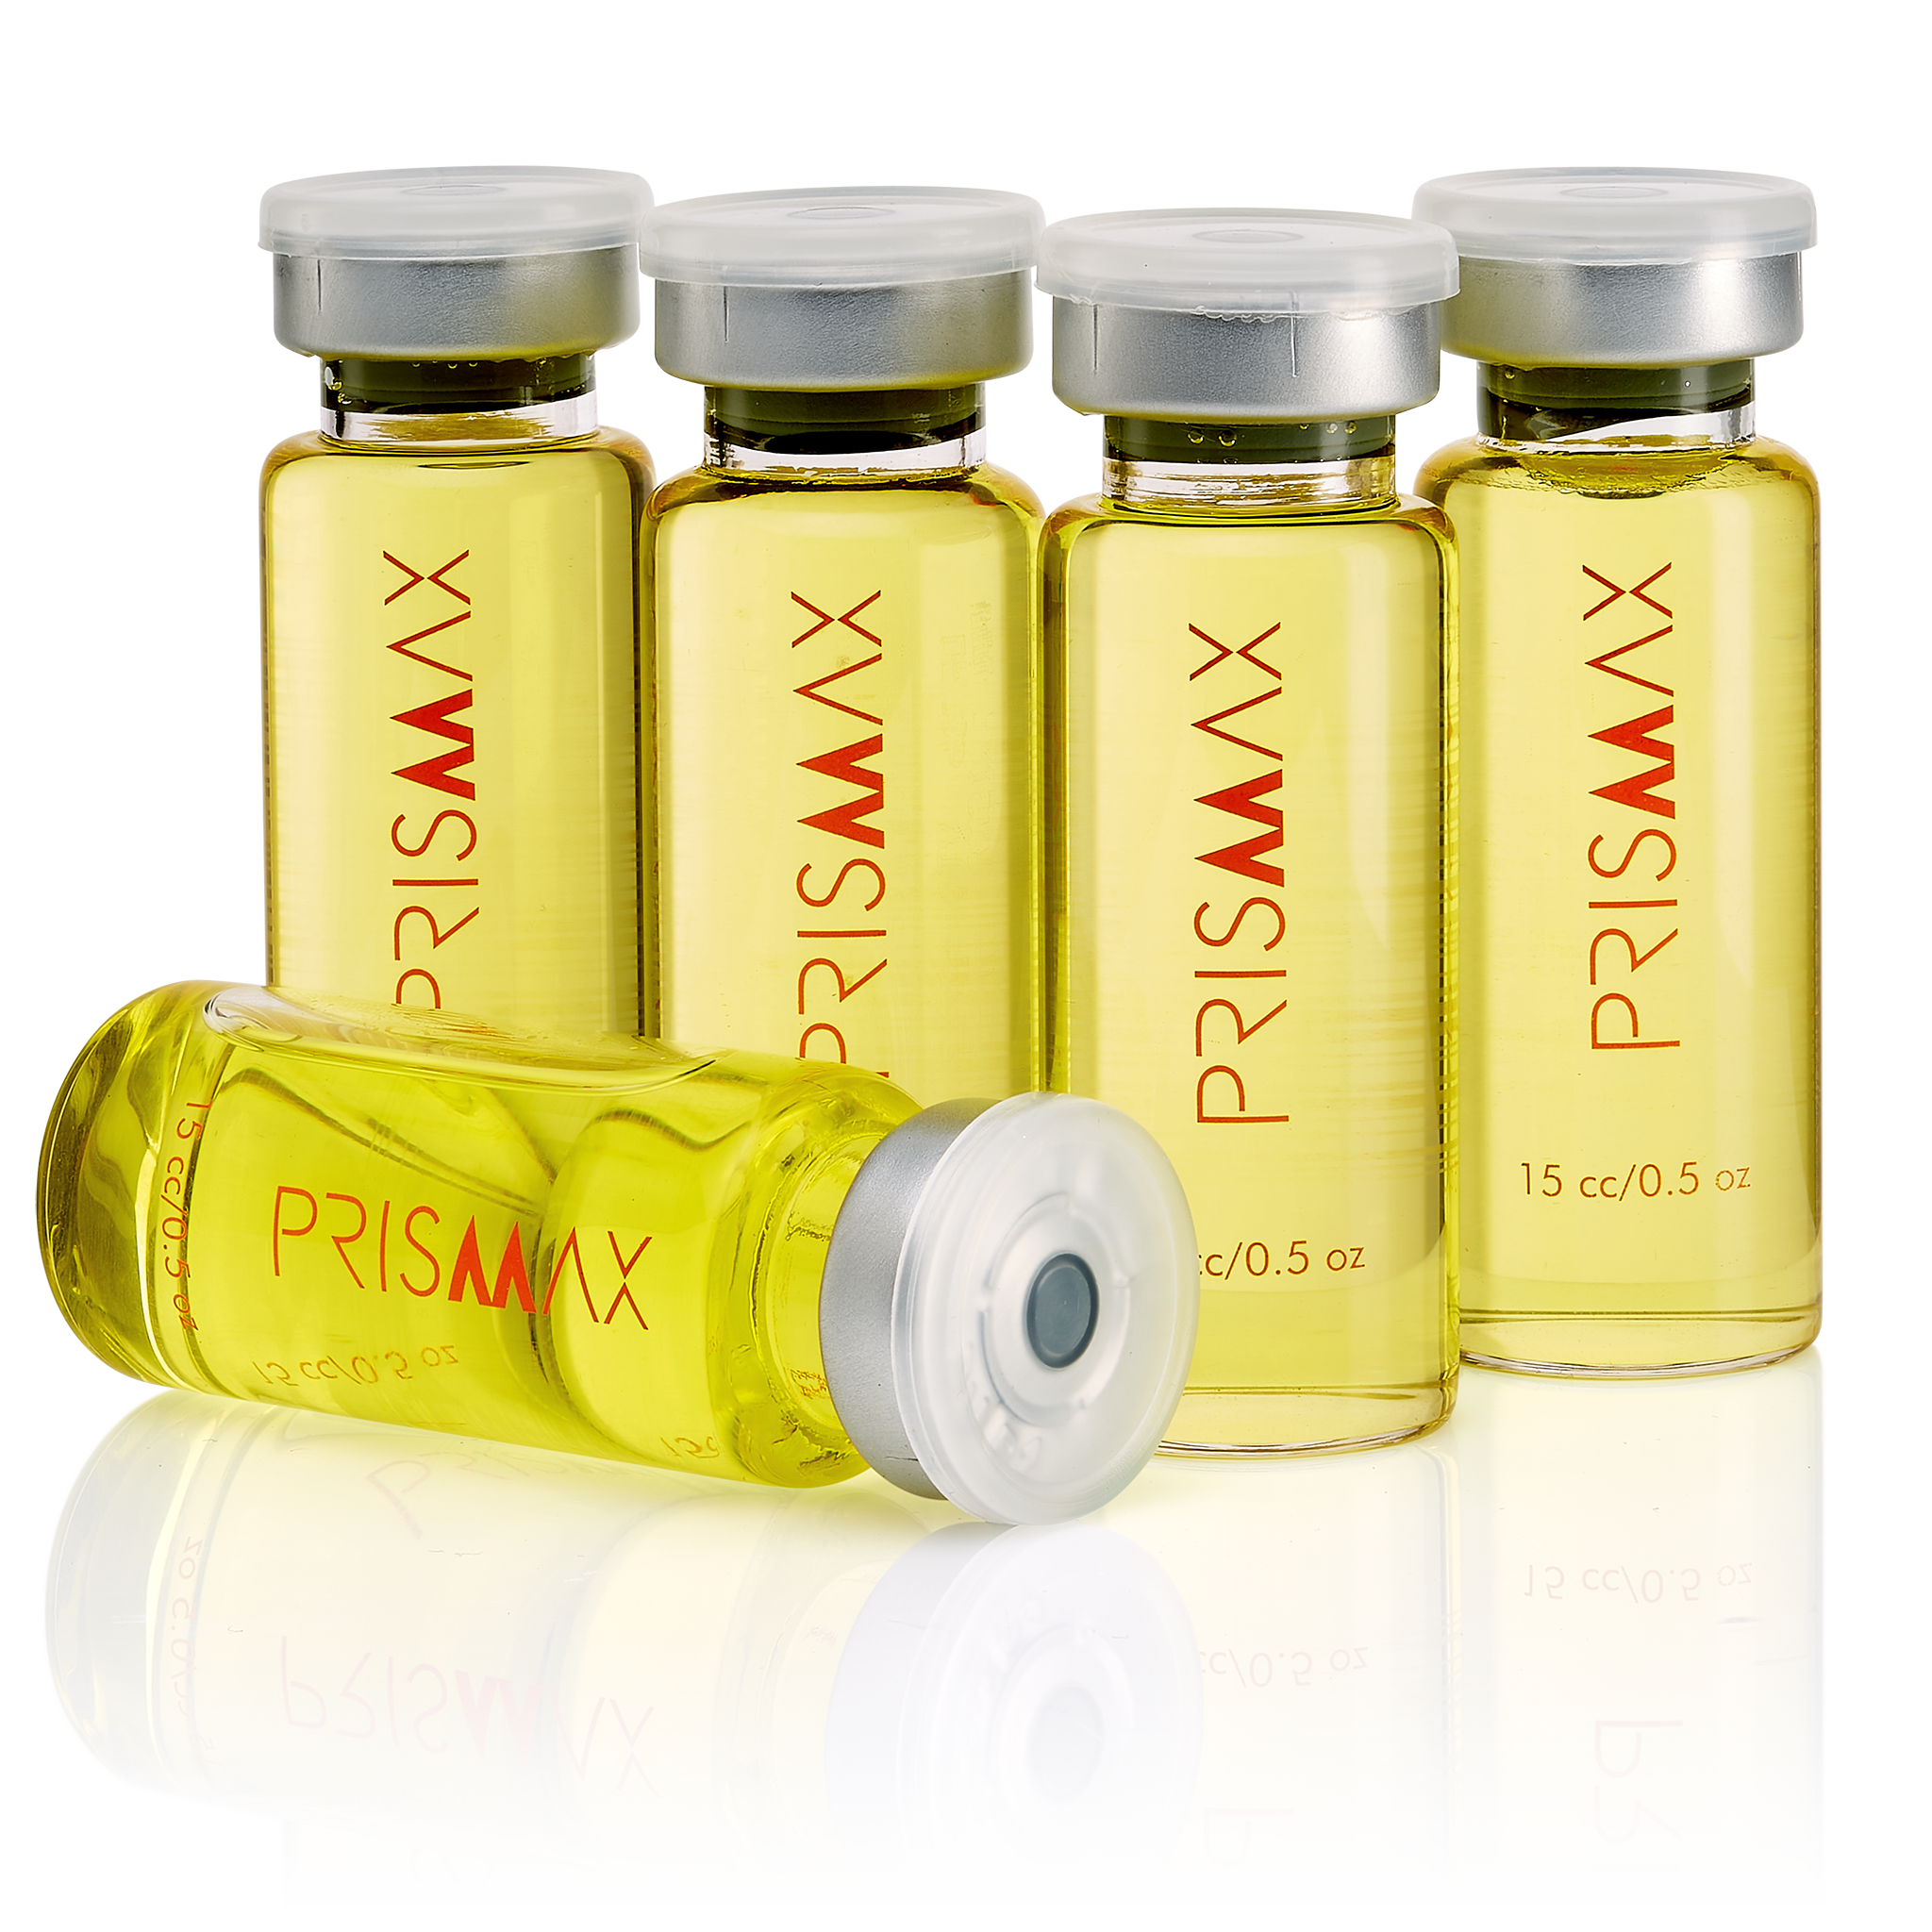 Prismax Nutritivo Botox Capilar - 5 Tratamientos